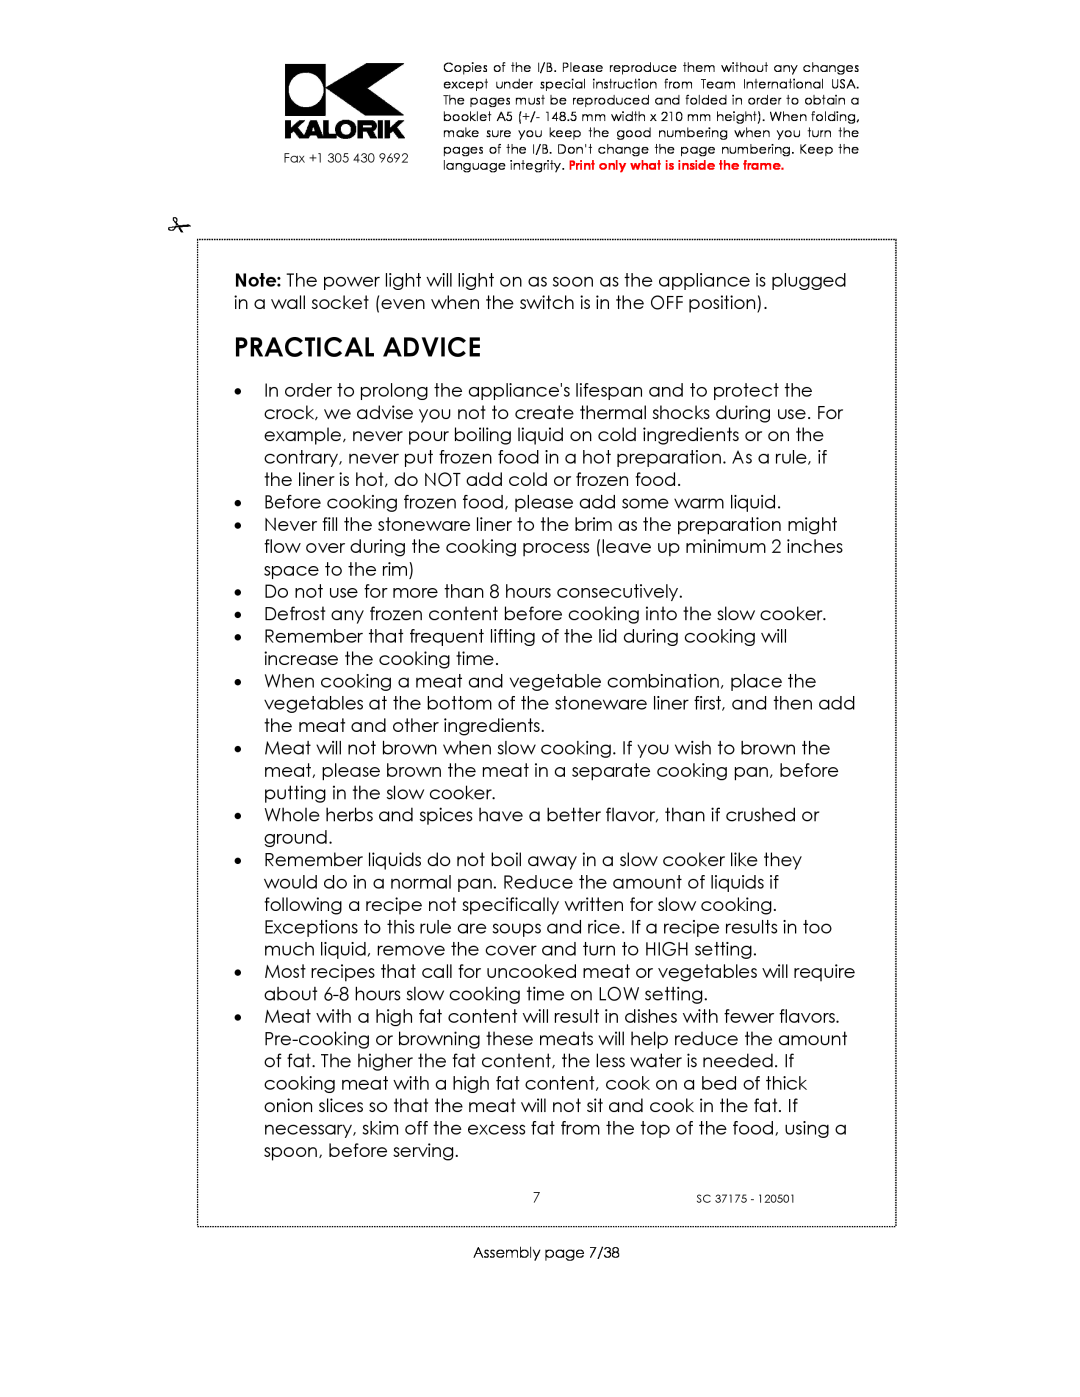 Kalorik SC 37175 manual Practical Advice 